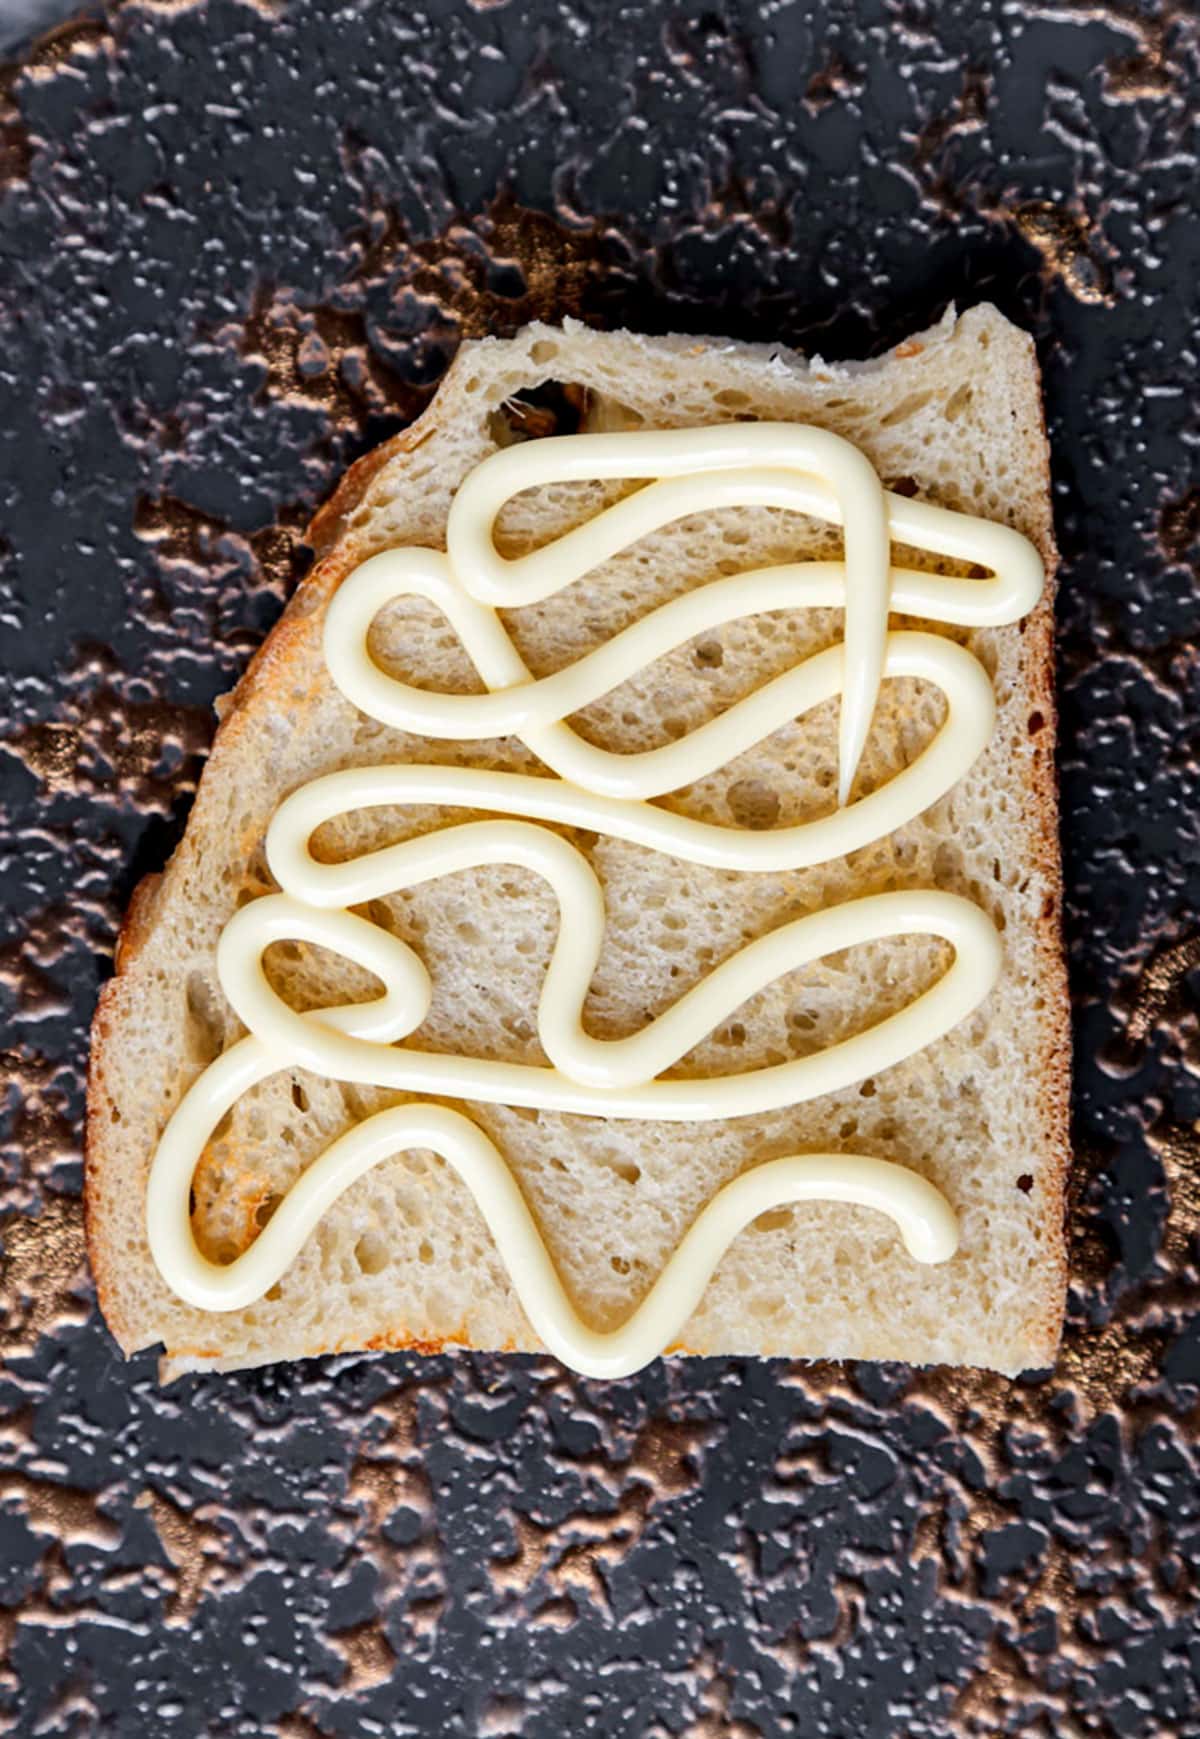 mayonnaise on bread